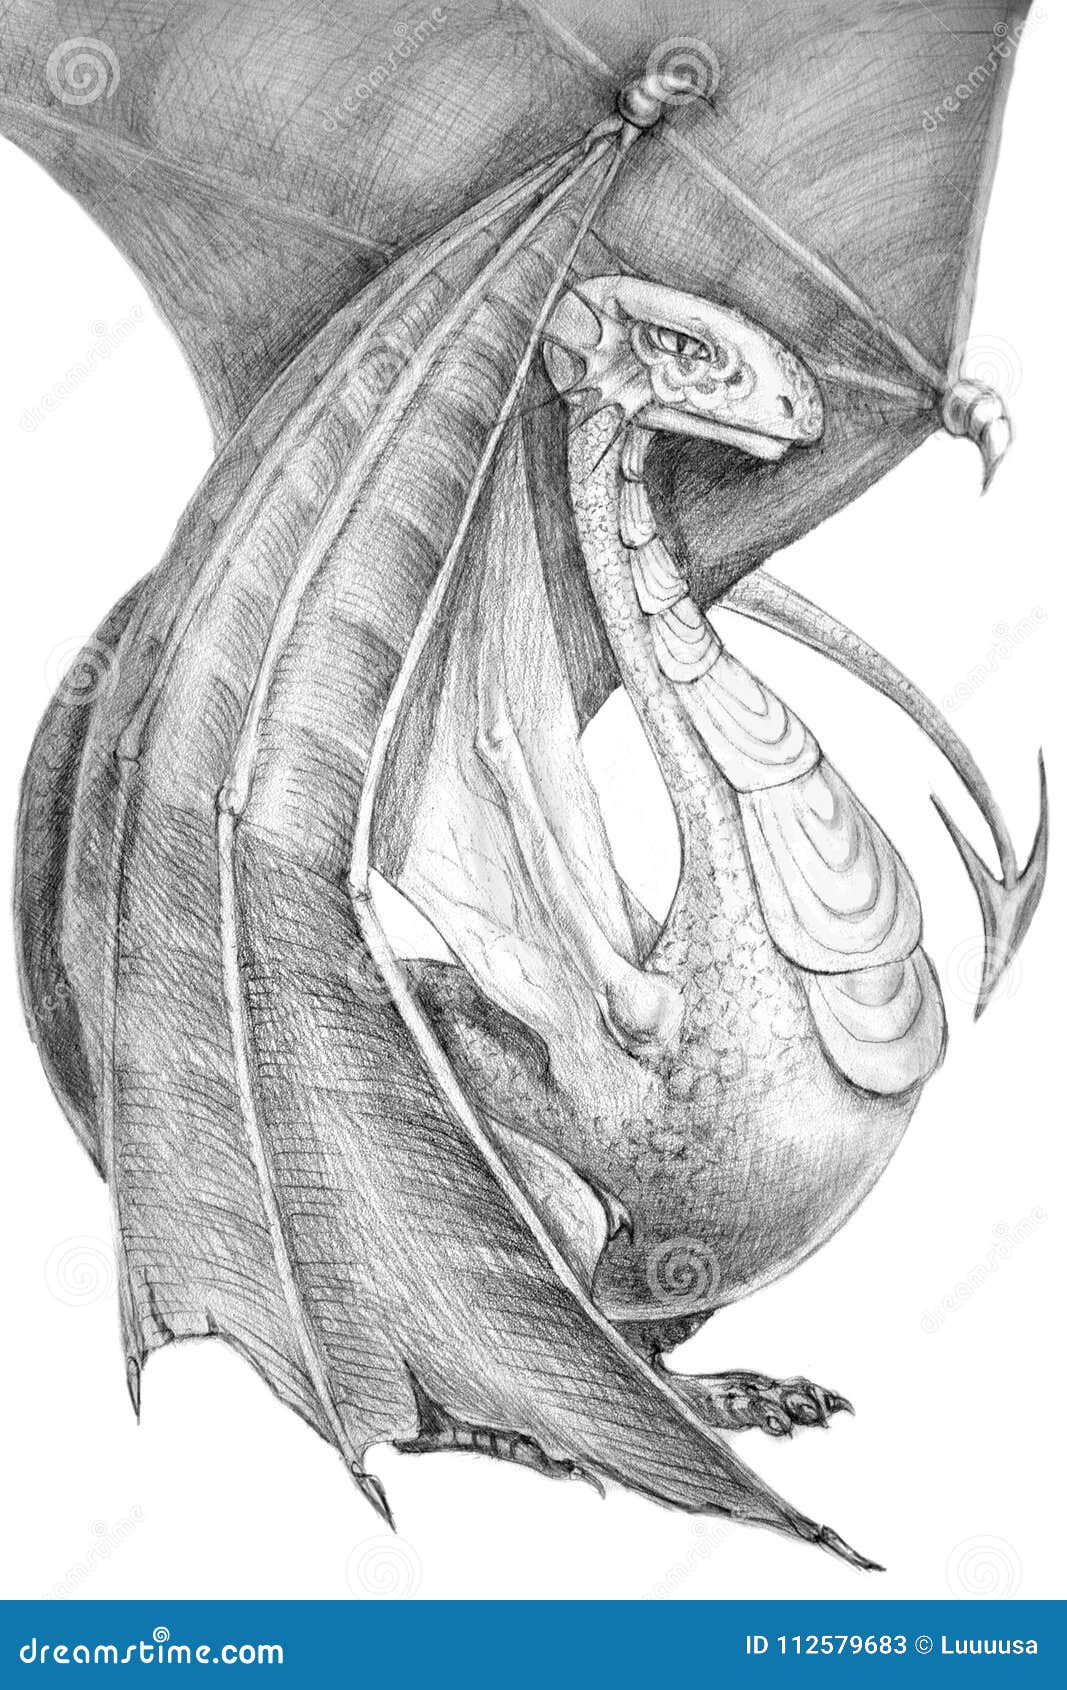 western dragon drawing